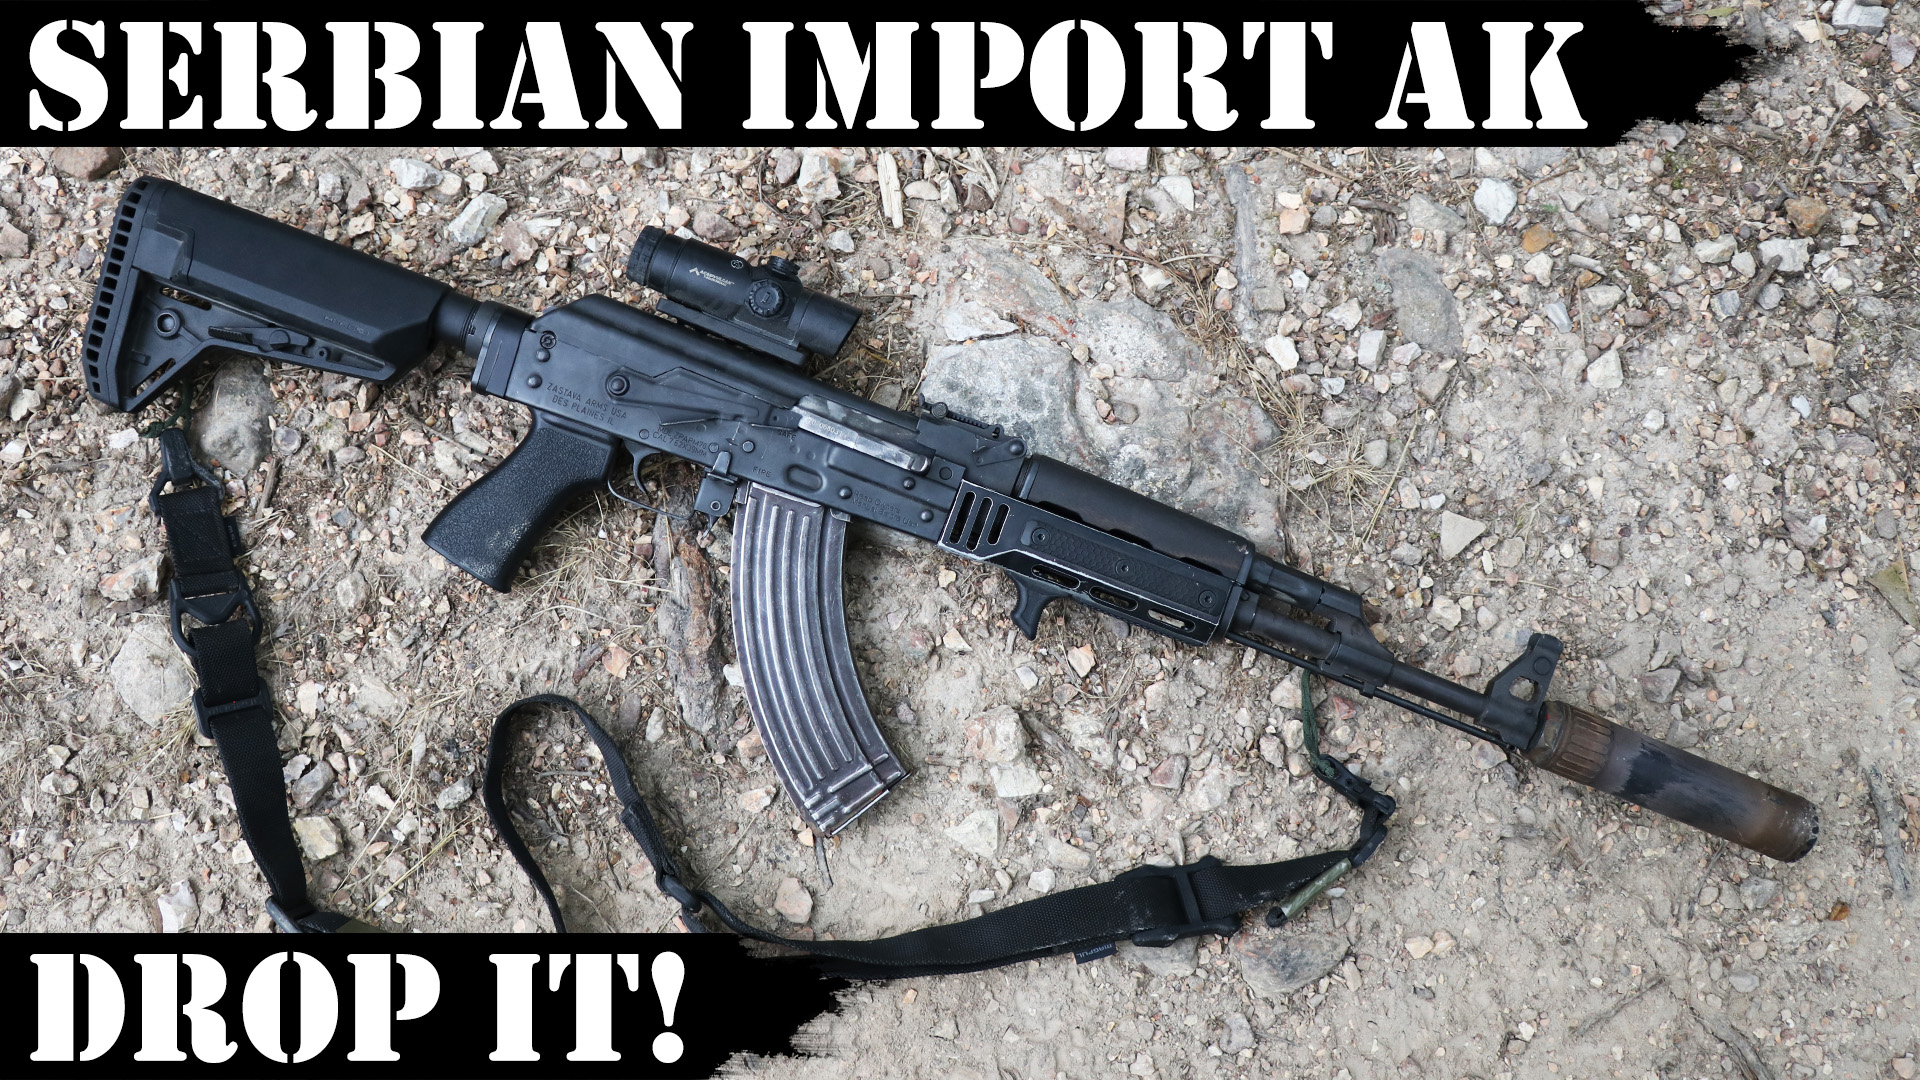 Serbian Import AK – Drop it! Get that Rivet Guy!